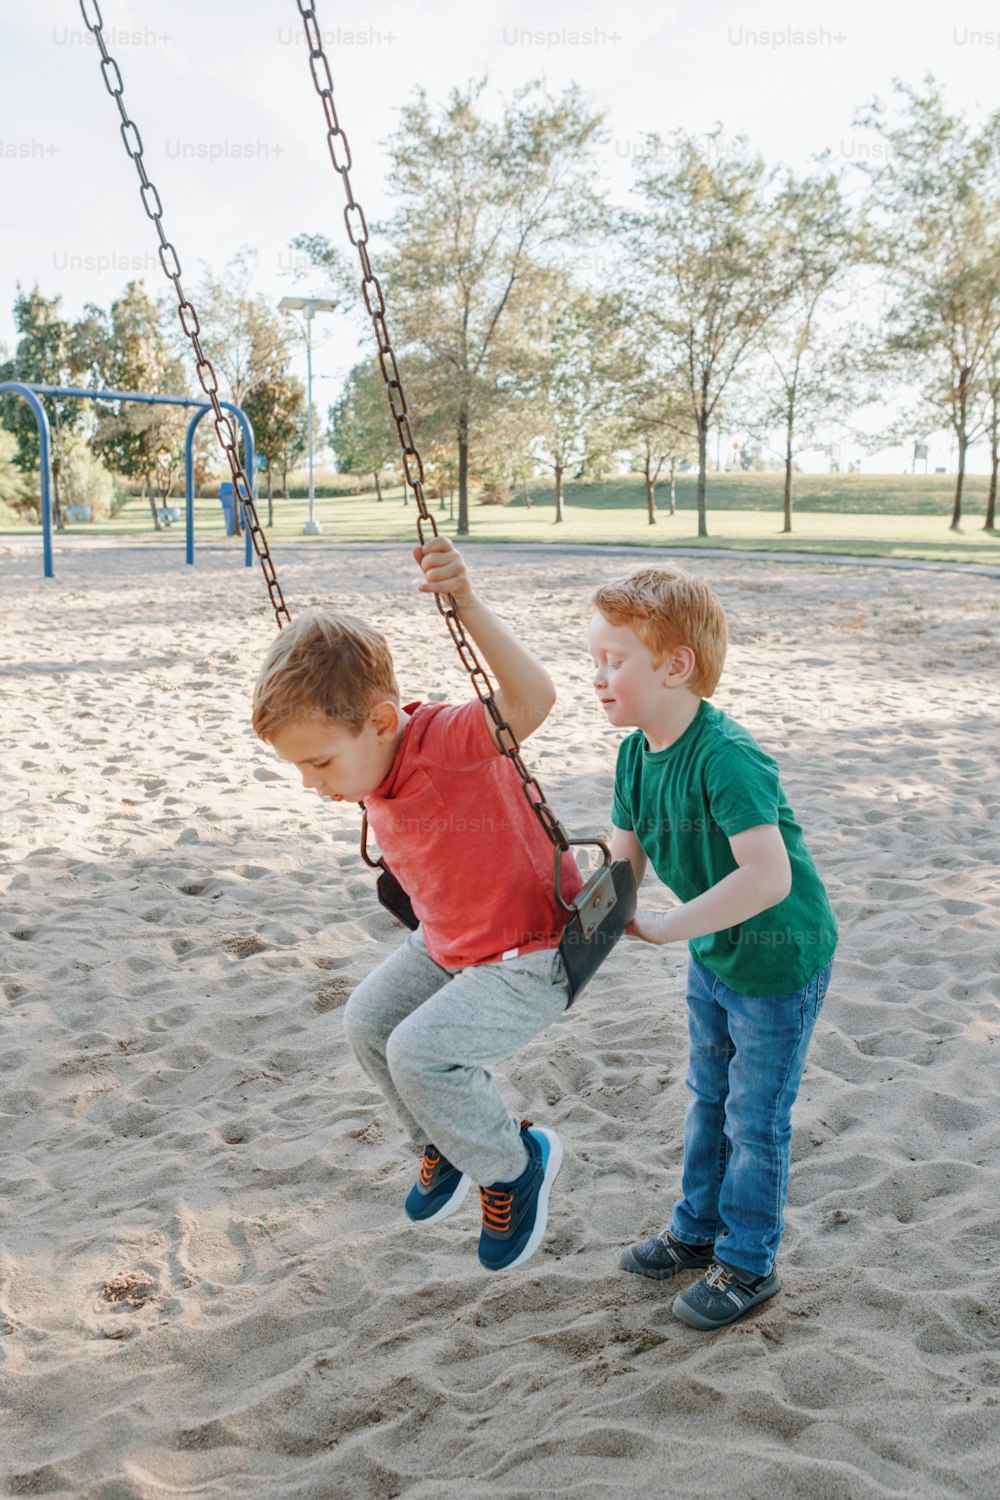 Felici sorridenti piccoli amici in età prescolare che oscillano sulle altalene al parco giochi all'aperto il giorno d'estate. Concetto di stile di vita dell'infanzia felice. Attività stagionale all'aperto per bambini.